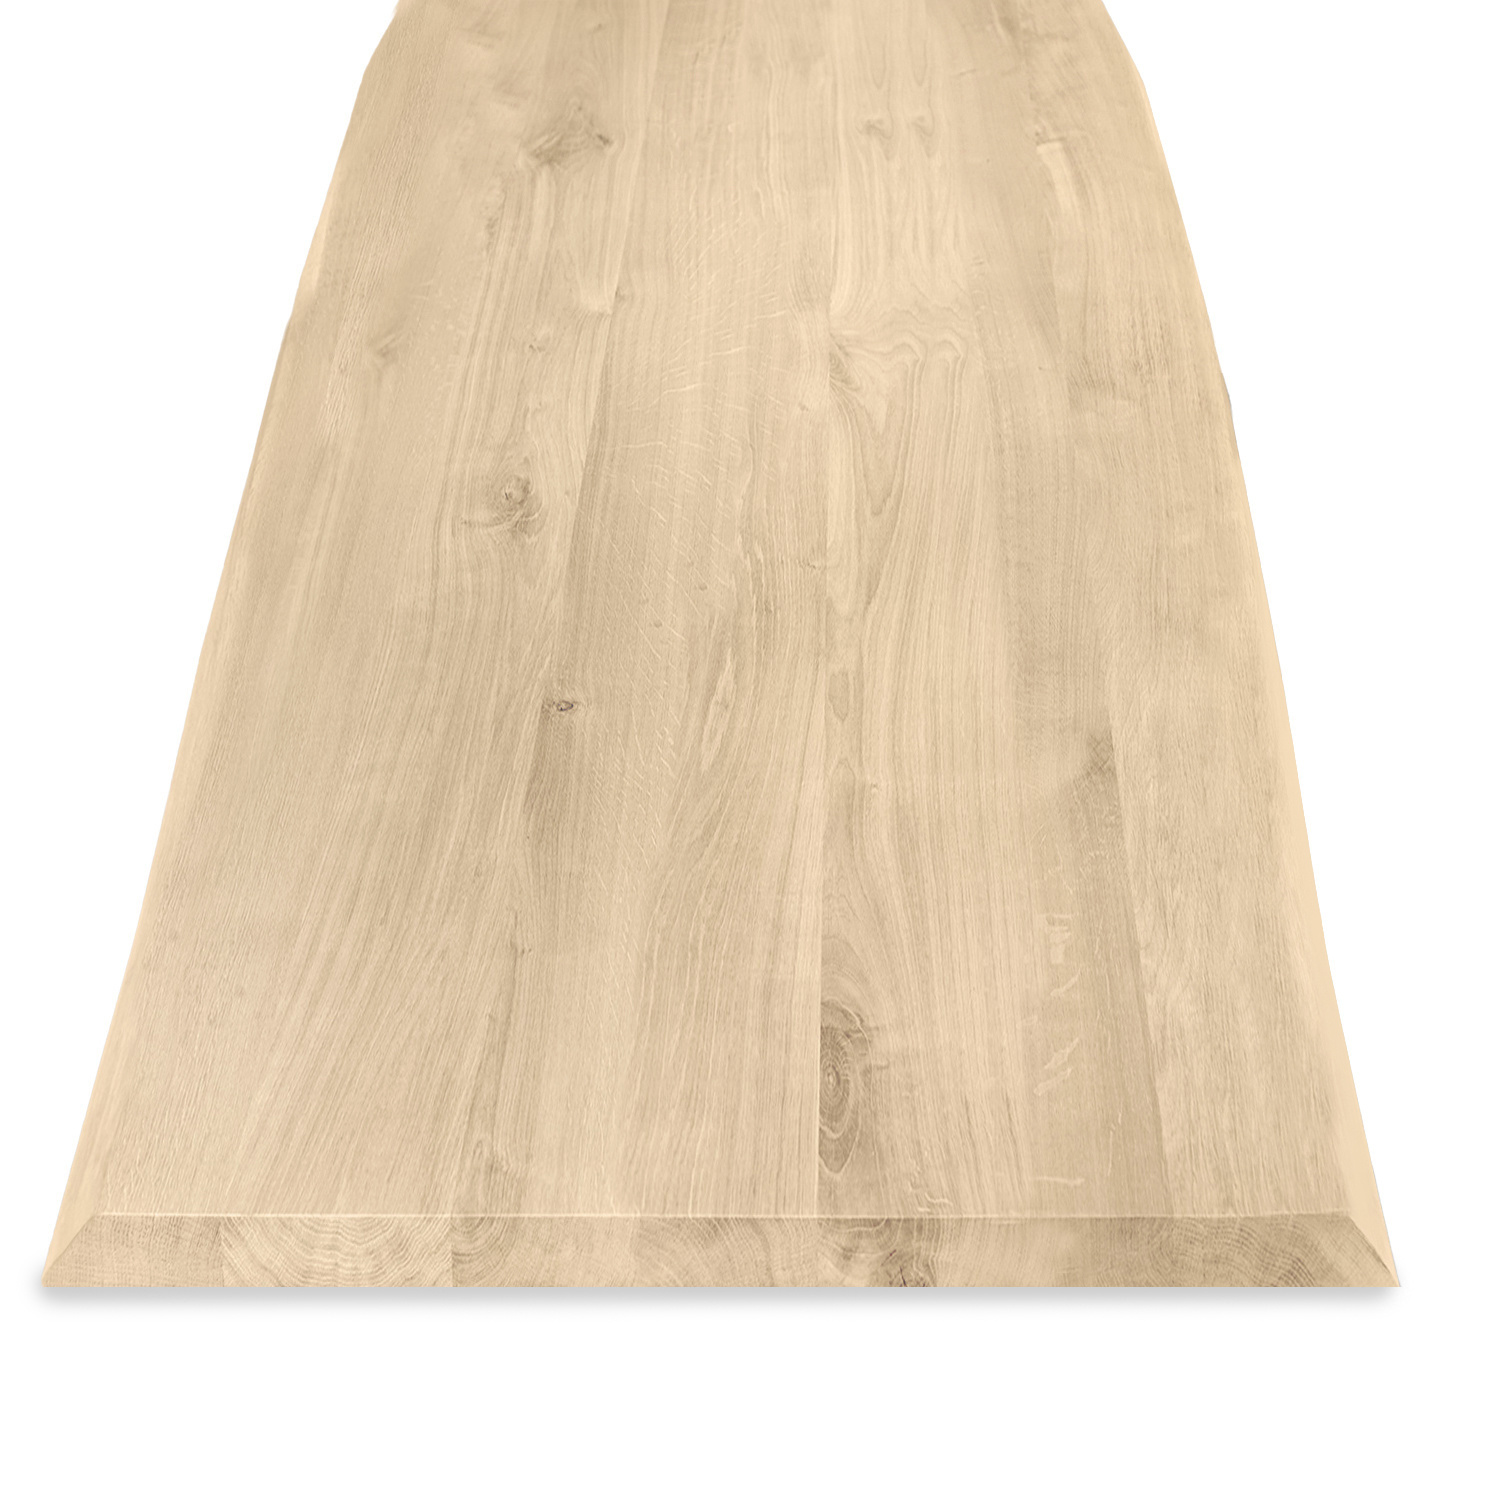  Tischplatte Eiche - mit Baumkante (Optik)  - 4 cm dick (1-Schicht) - Breite Lamellen (10 - 12 cm breit) - Eichenholz rustikal - verleimt & künstlich getrocknet (HF 8-12%) - verschiedene Größen